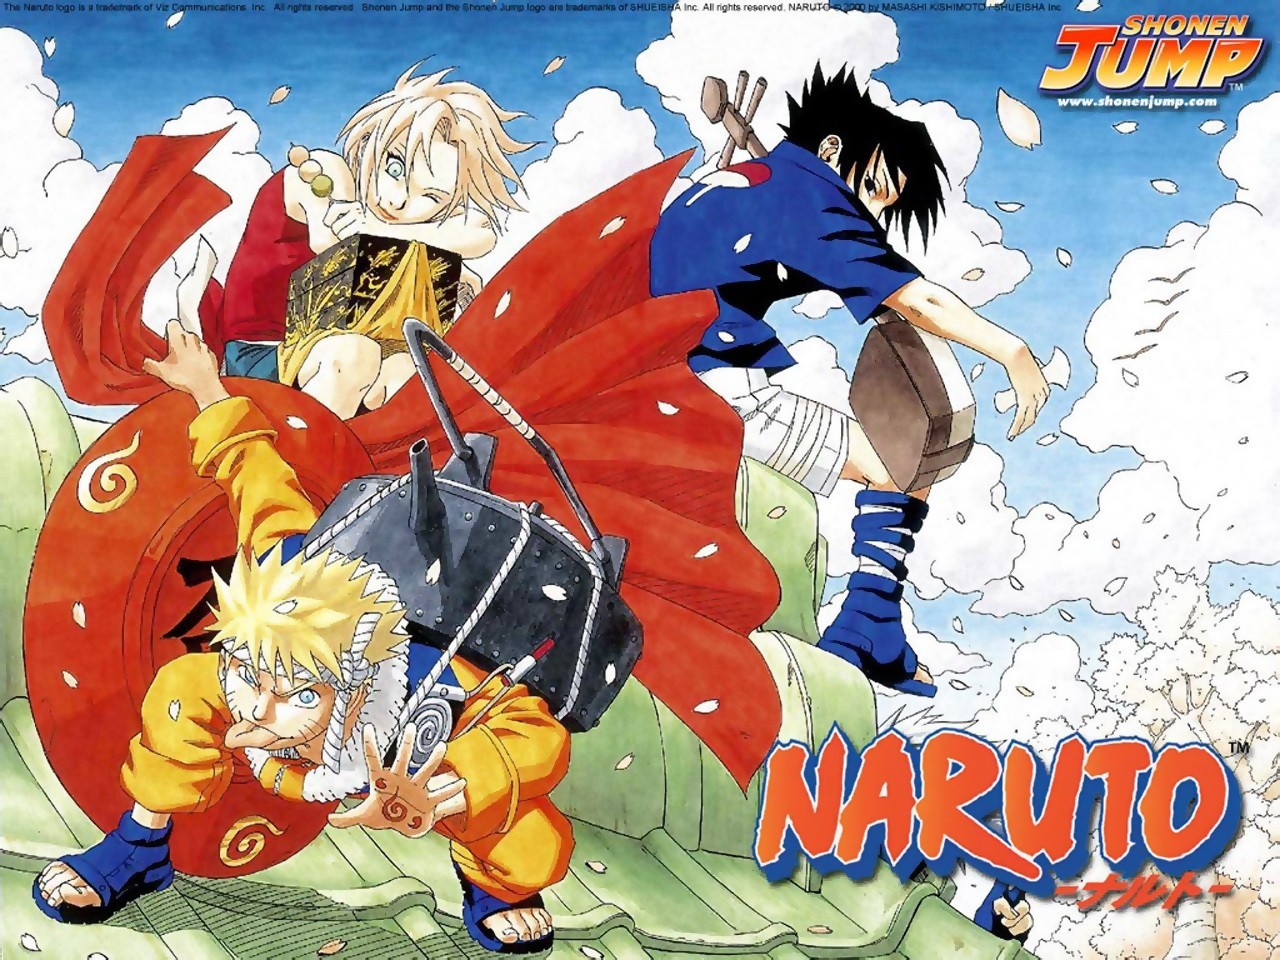 Naruto & Sakura & Sasuke by Masashi Kishimoto